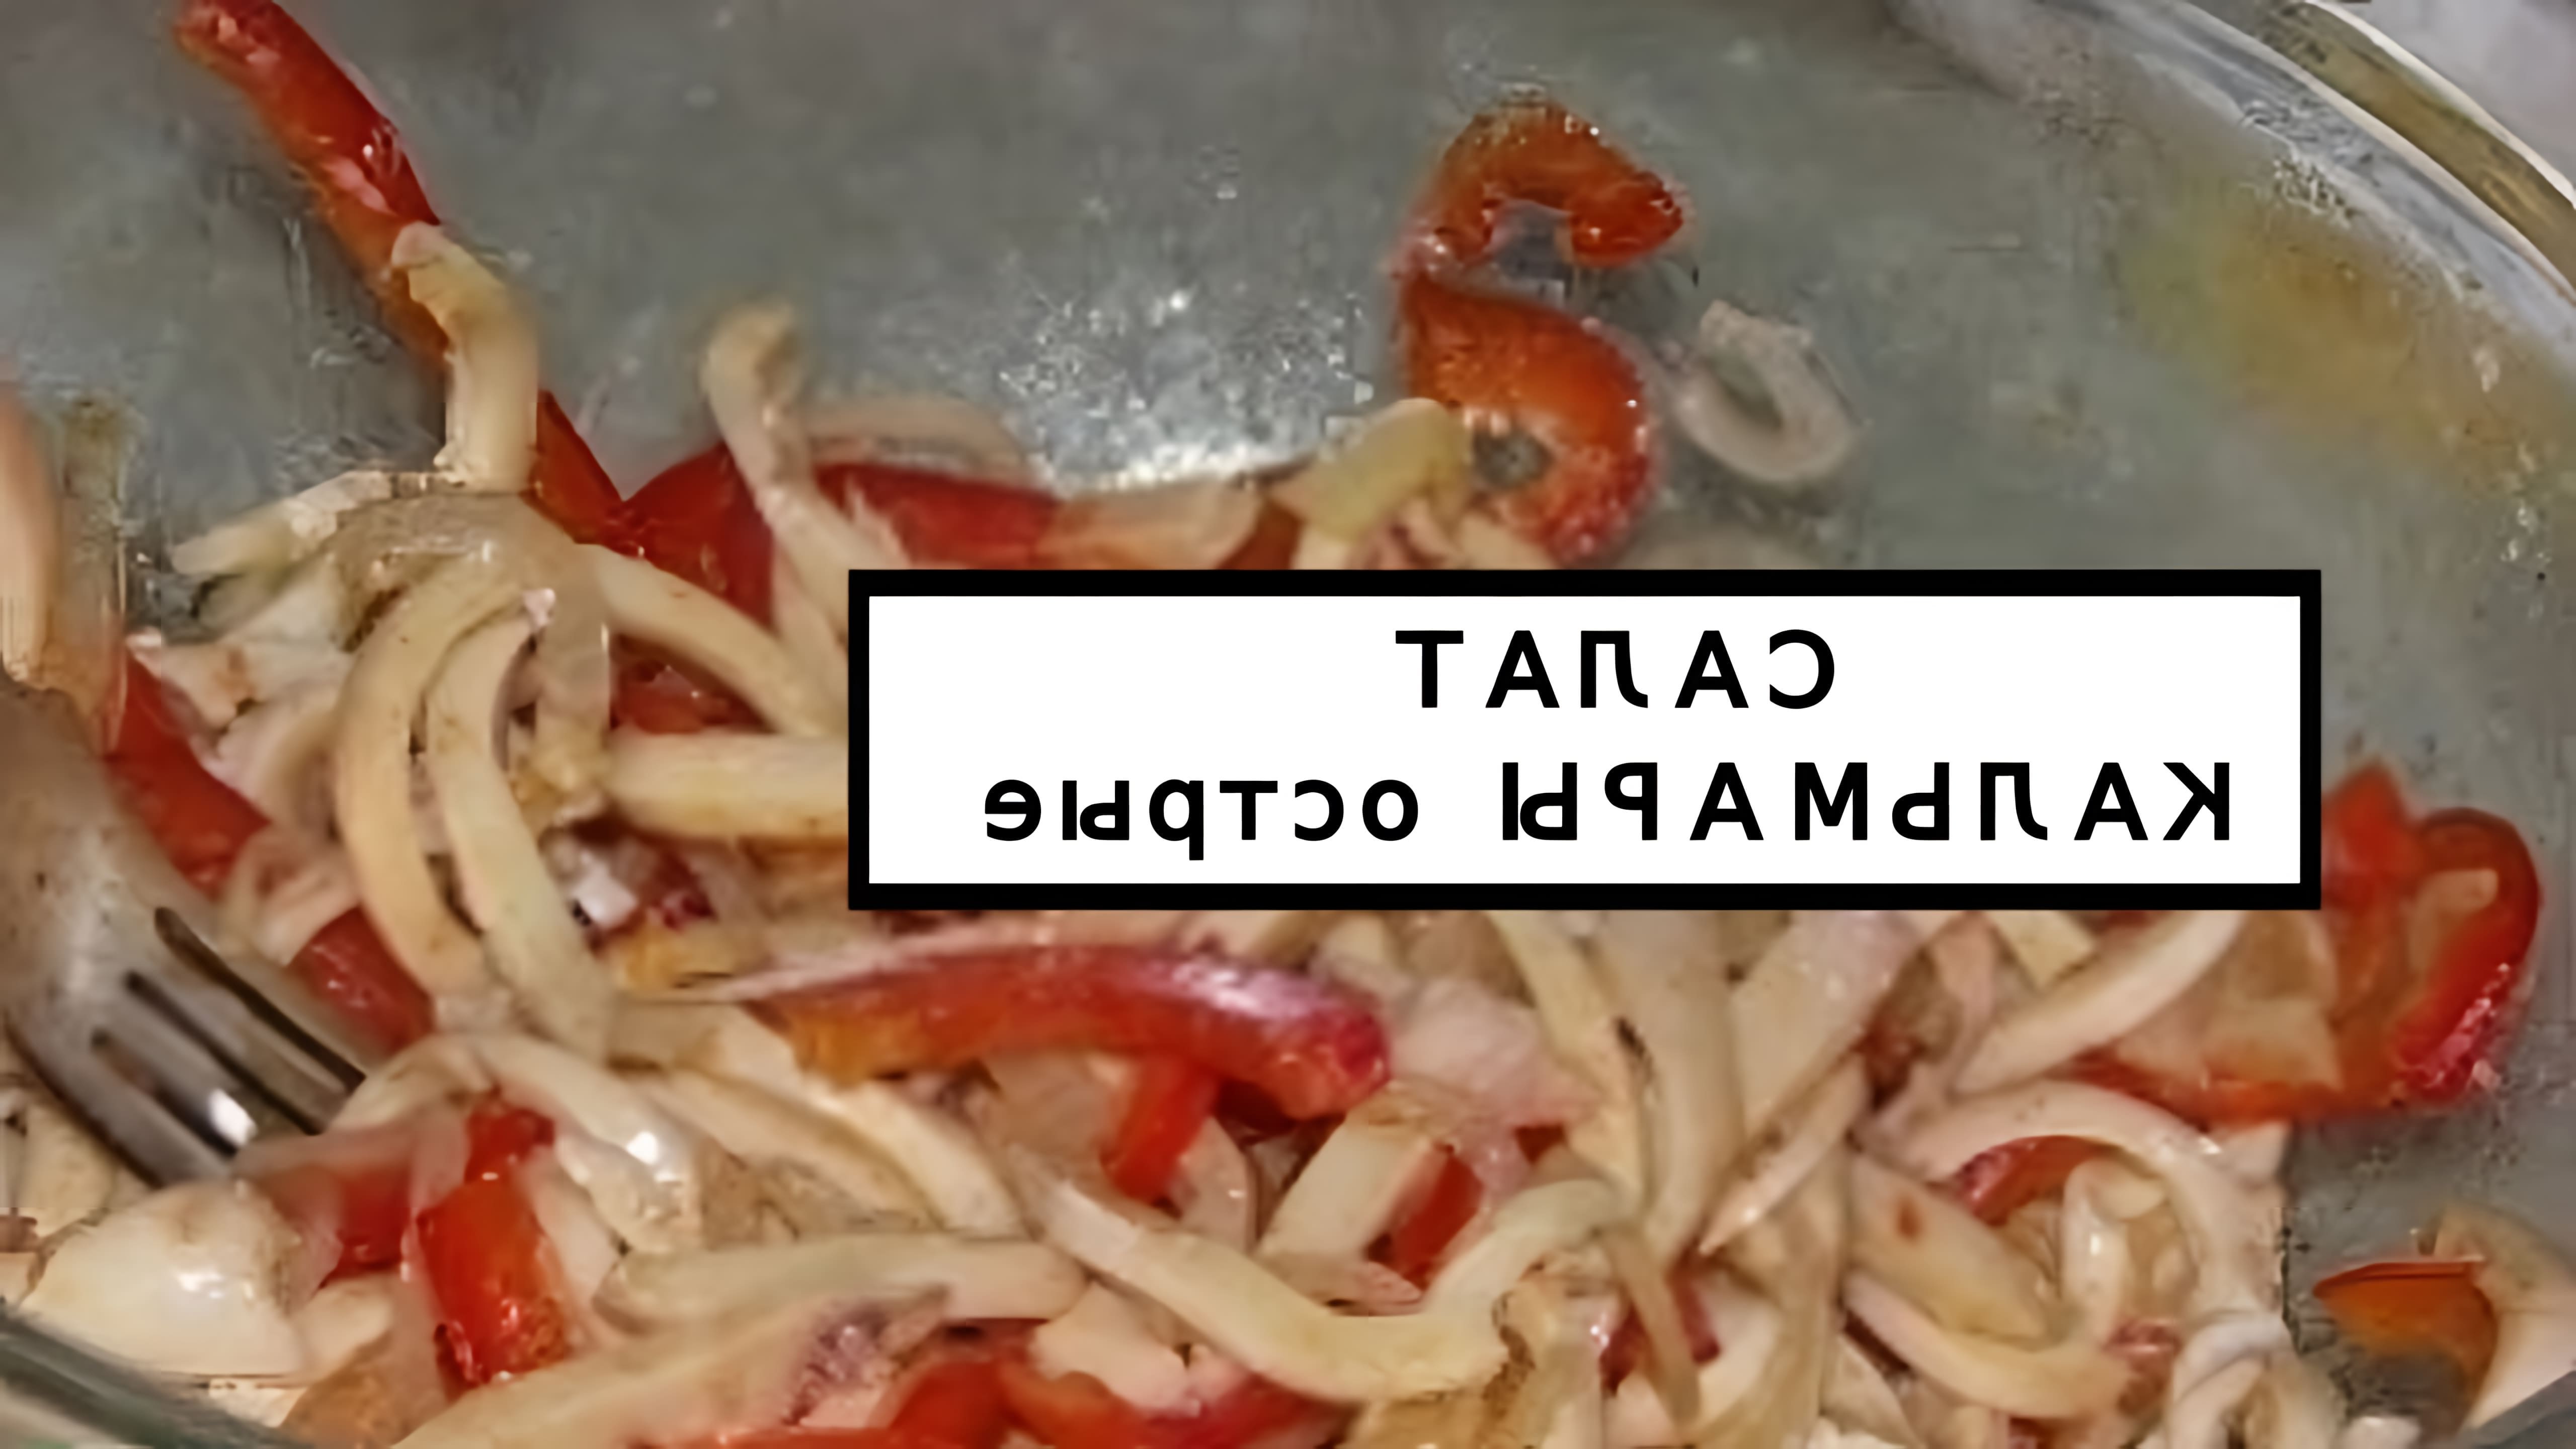 В данном видео представлен рецепт приготовления салата с кальмарами, который называется "острый"